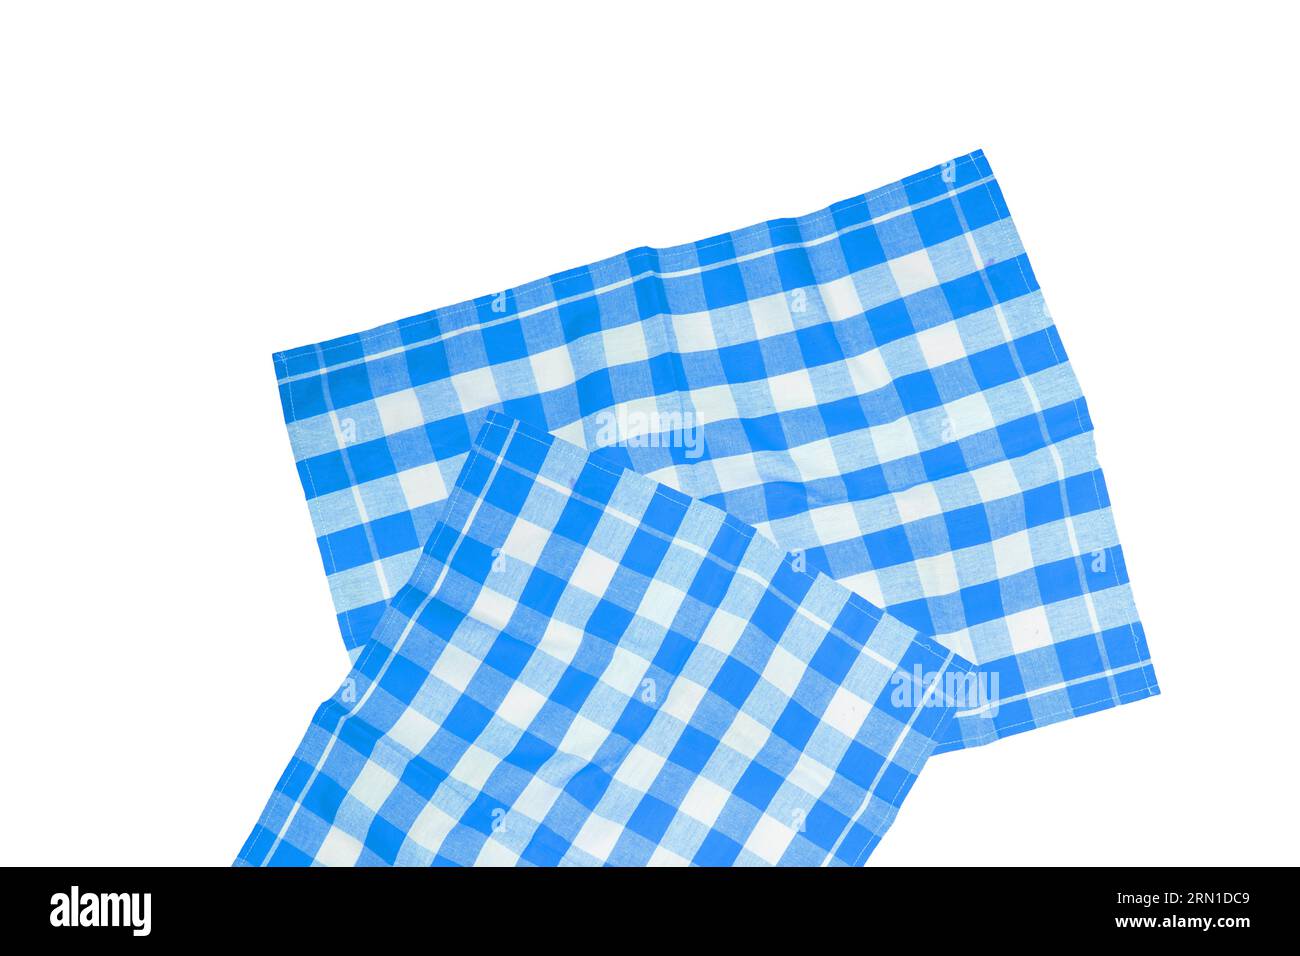 Nahaufnahme von zwei blau-weiß karierten Servietten- oder Tischdecken-Texturen auf weißem Hintergrund. Küchenaccessoires. Stockfoto